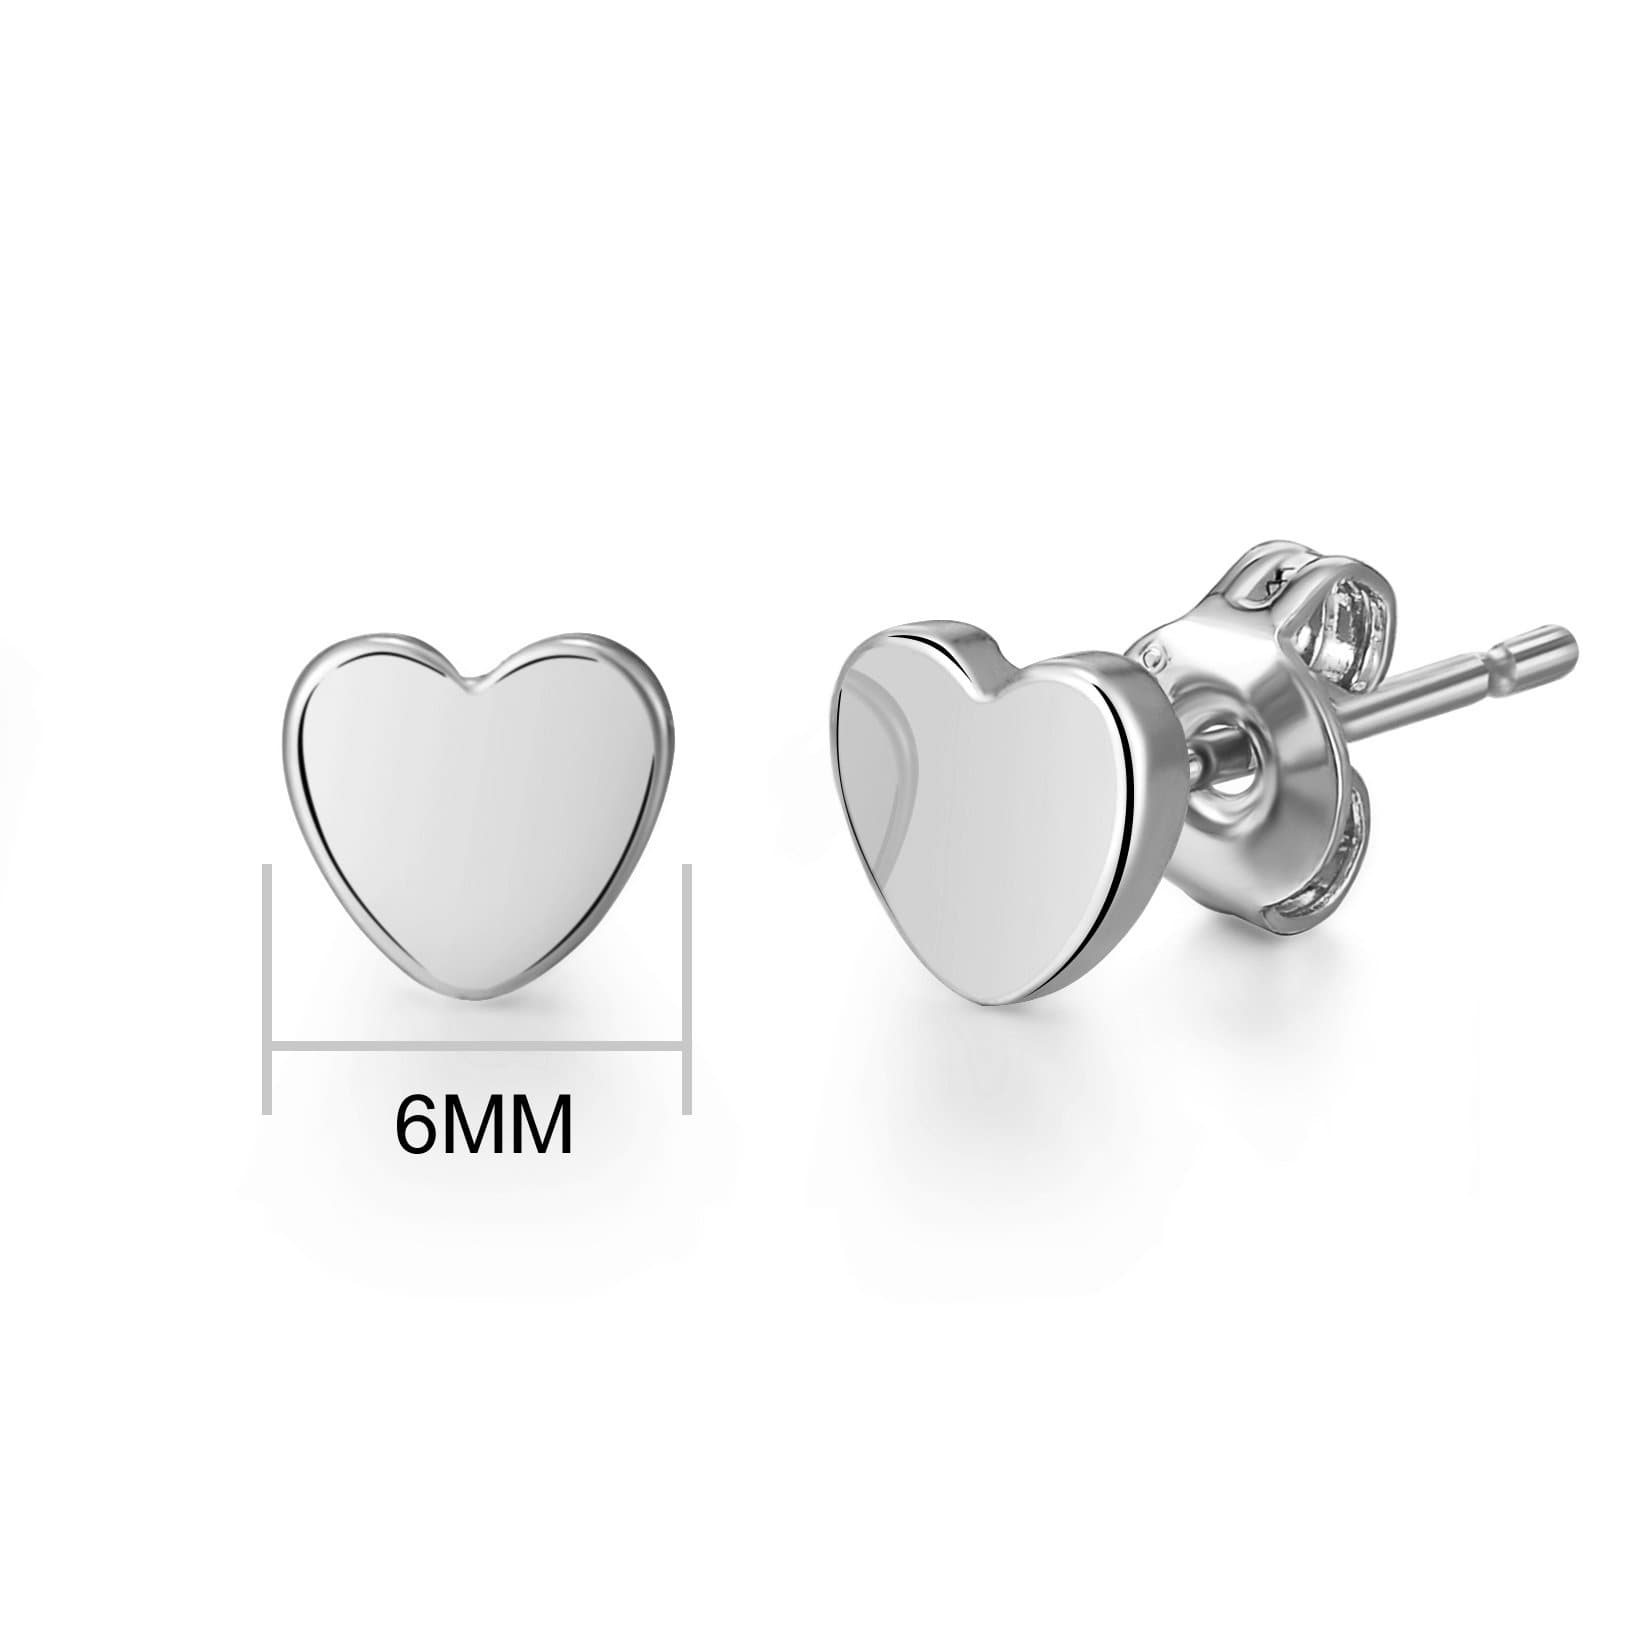 Silver Plated Heart Stud Earrings